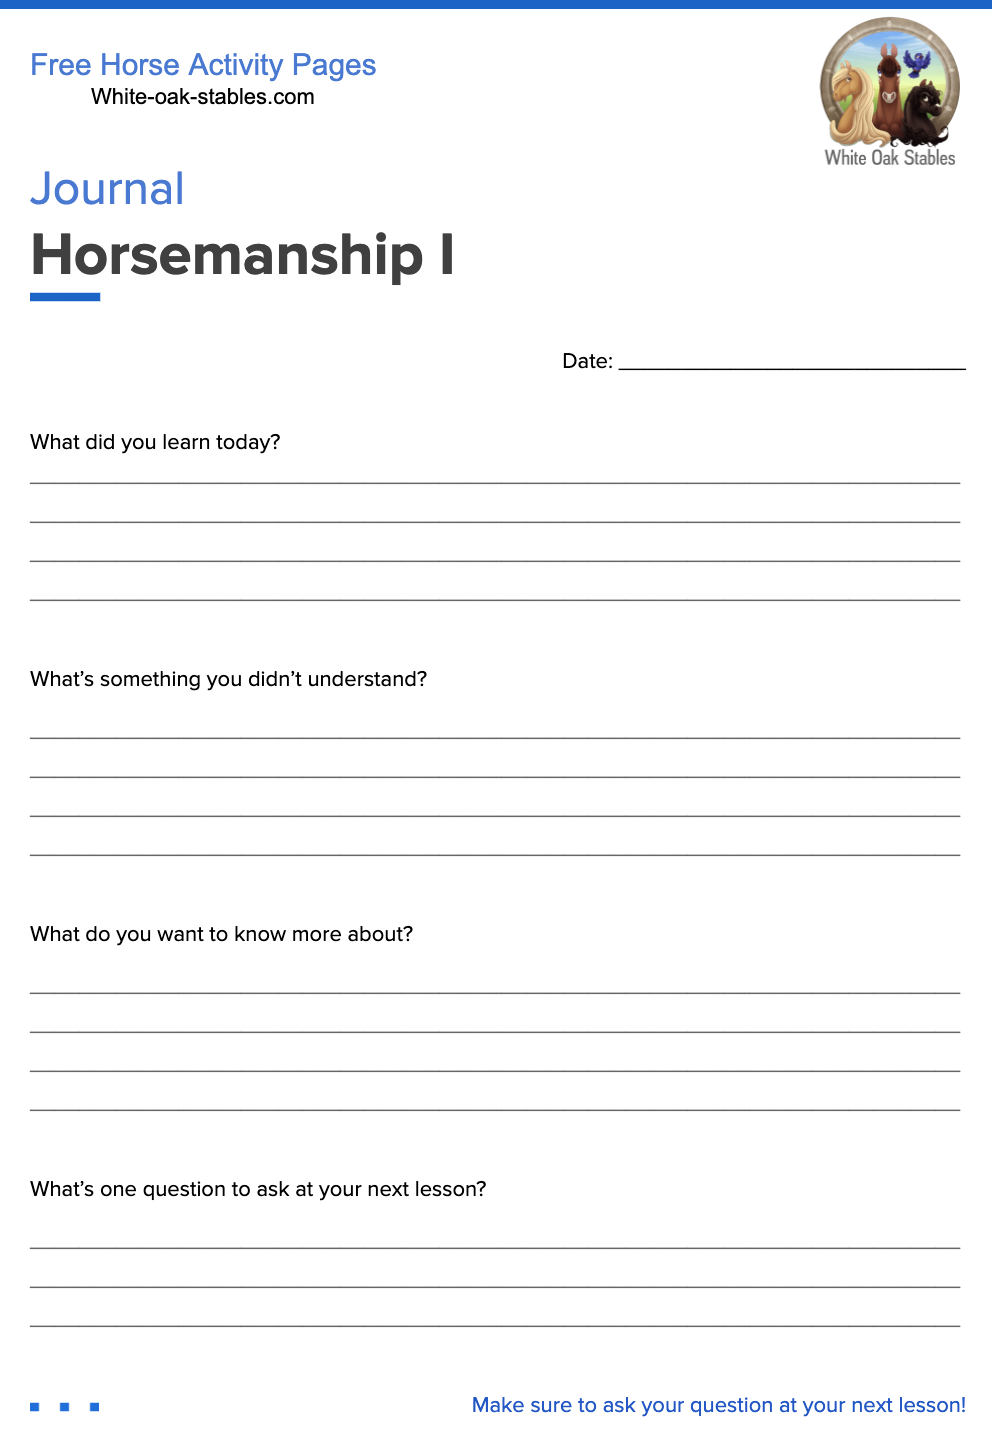 Journal – Horsemanship I